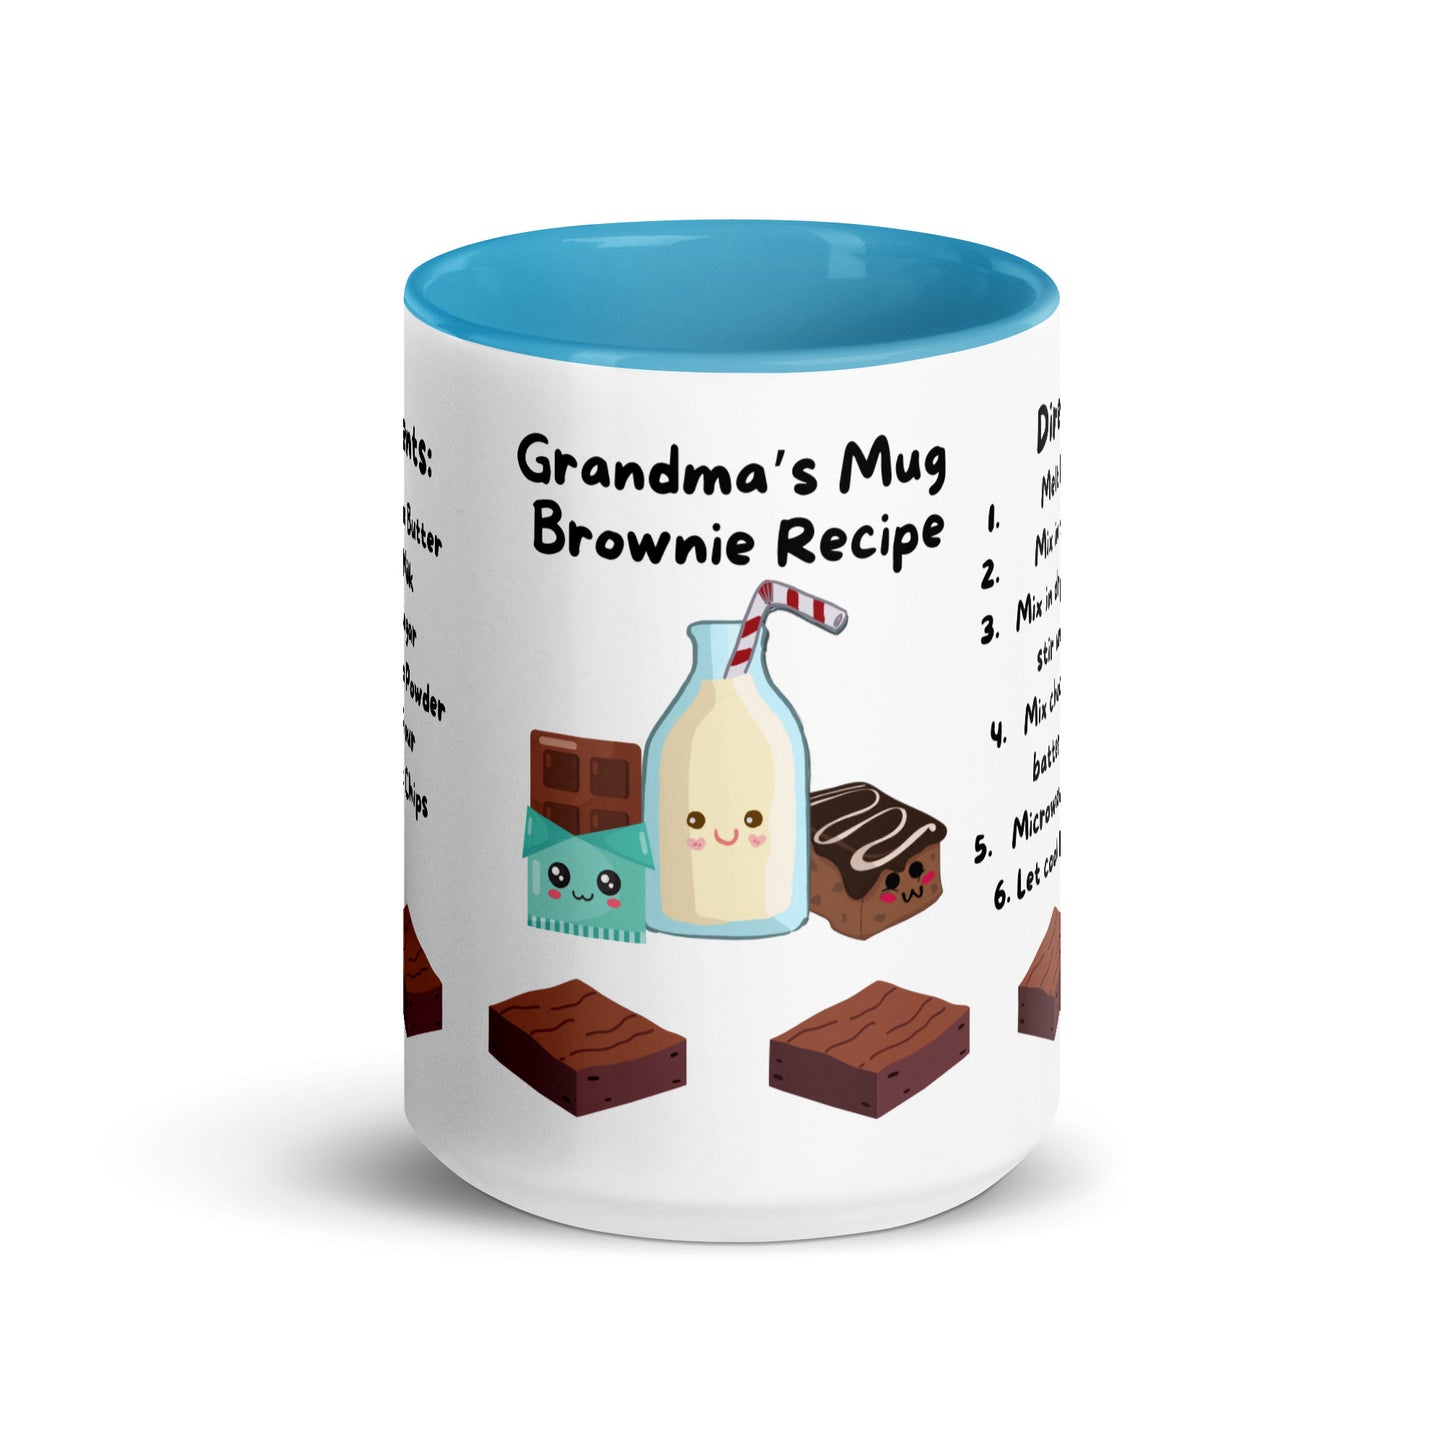 Grandma's Brownie *Mug Cake Recipe Mug*